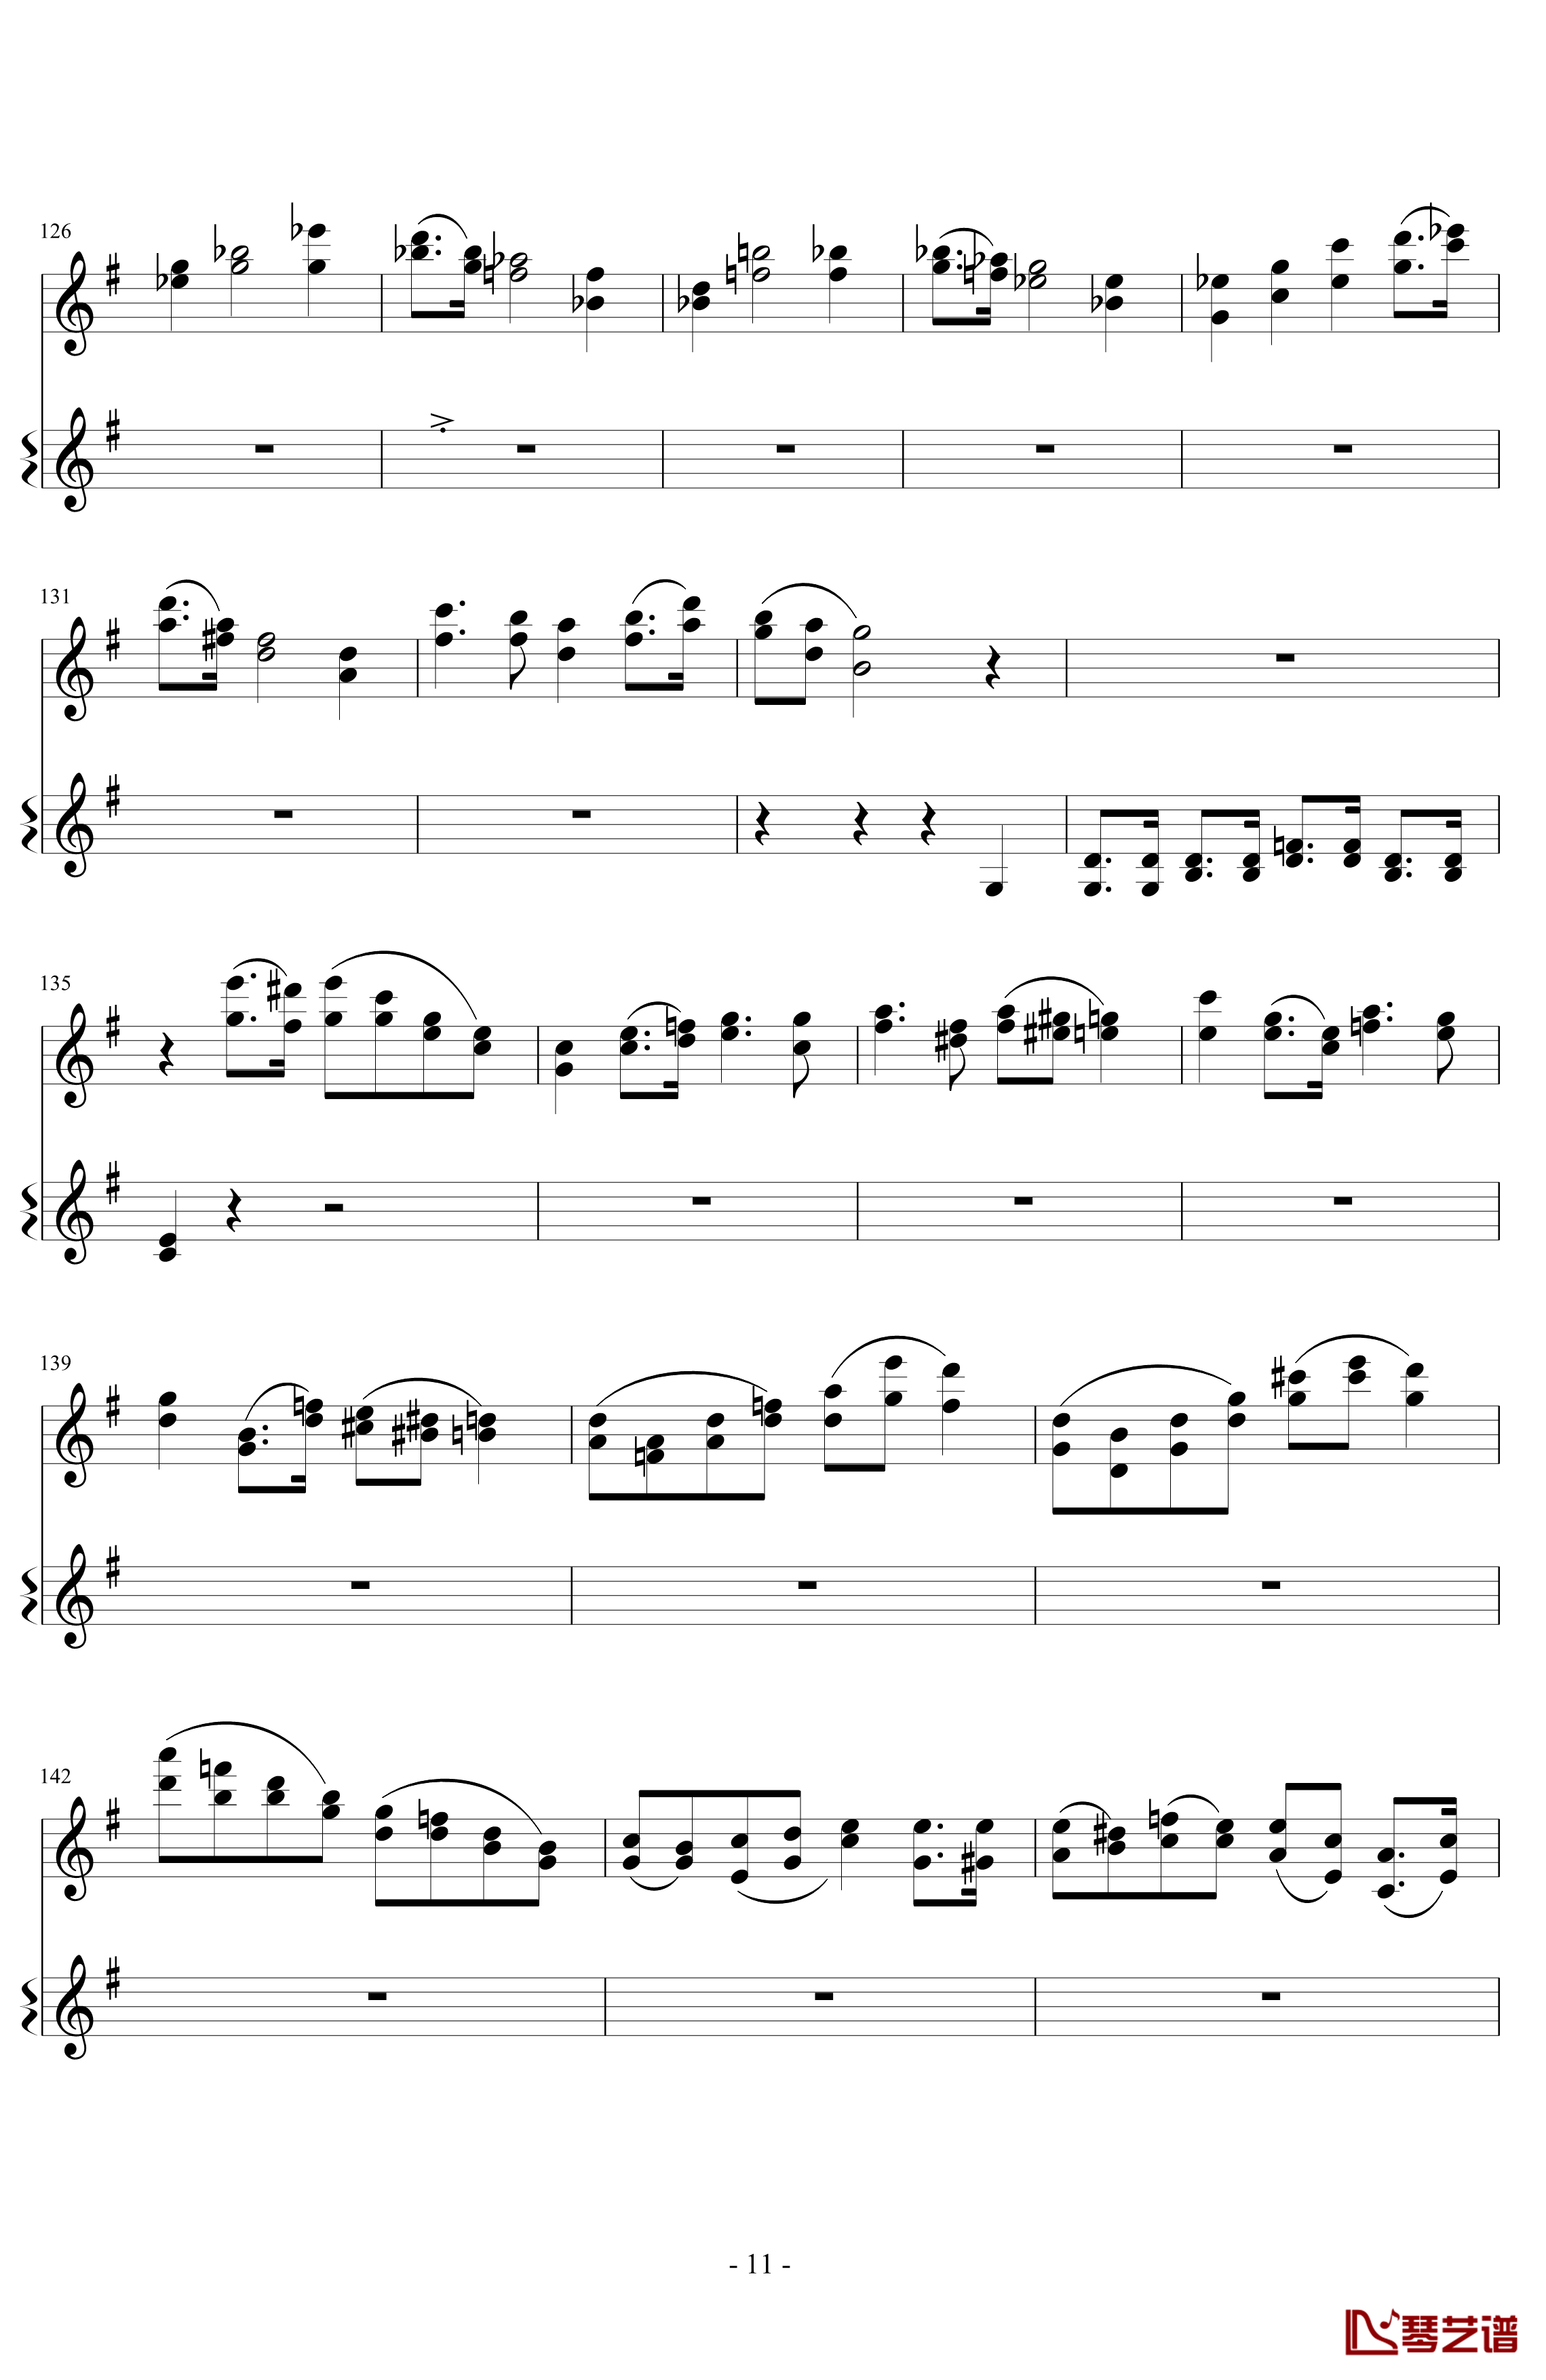 意大利国歌变奏曲钢琴谱-DXF11